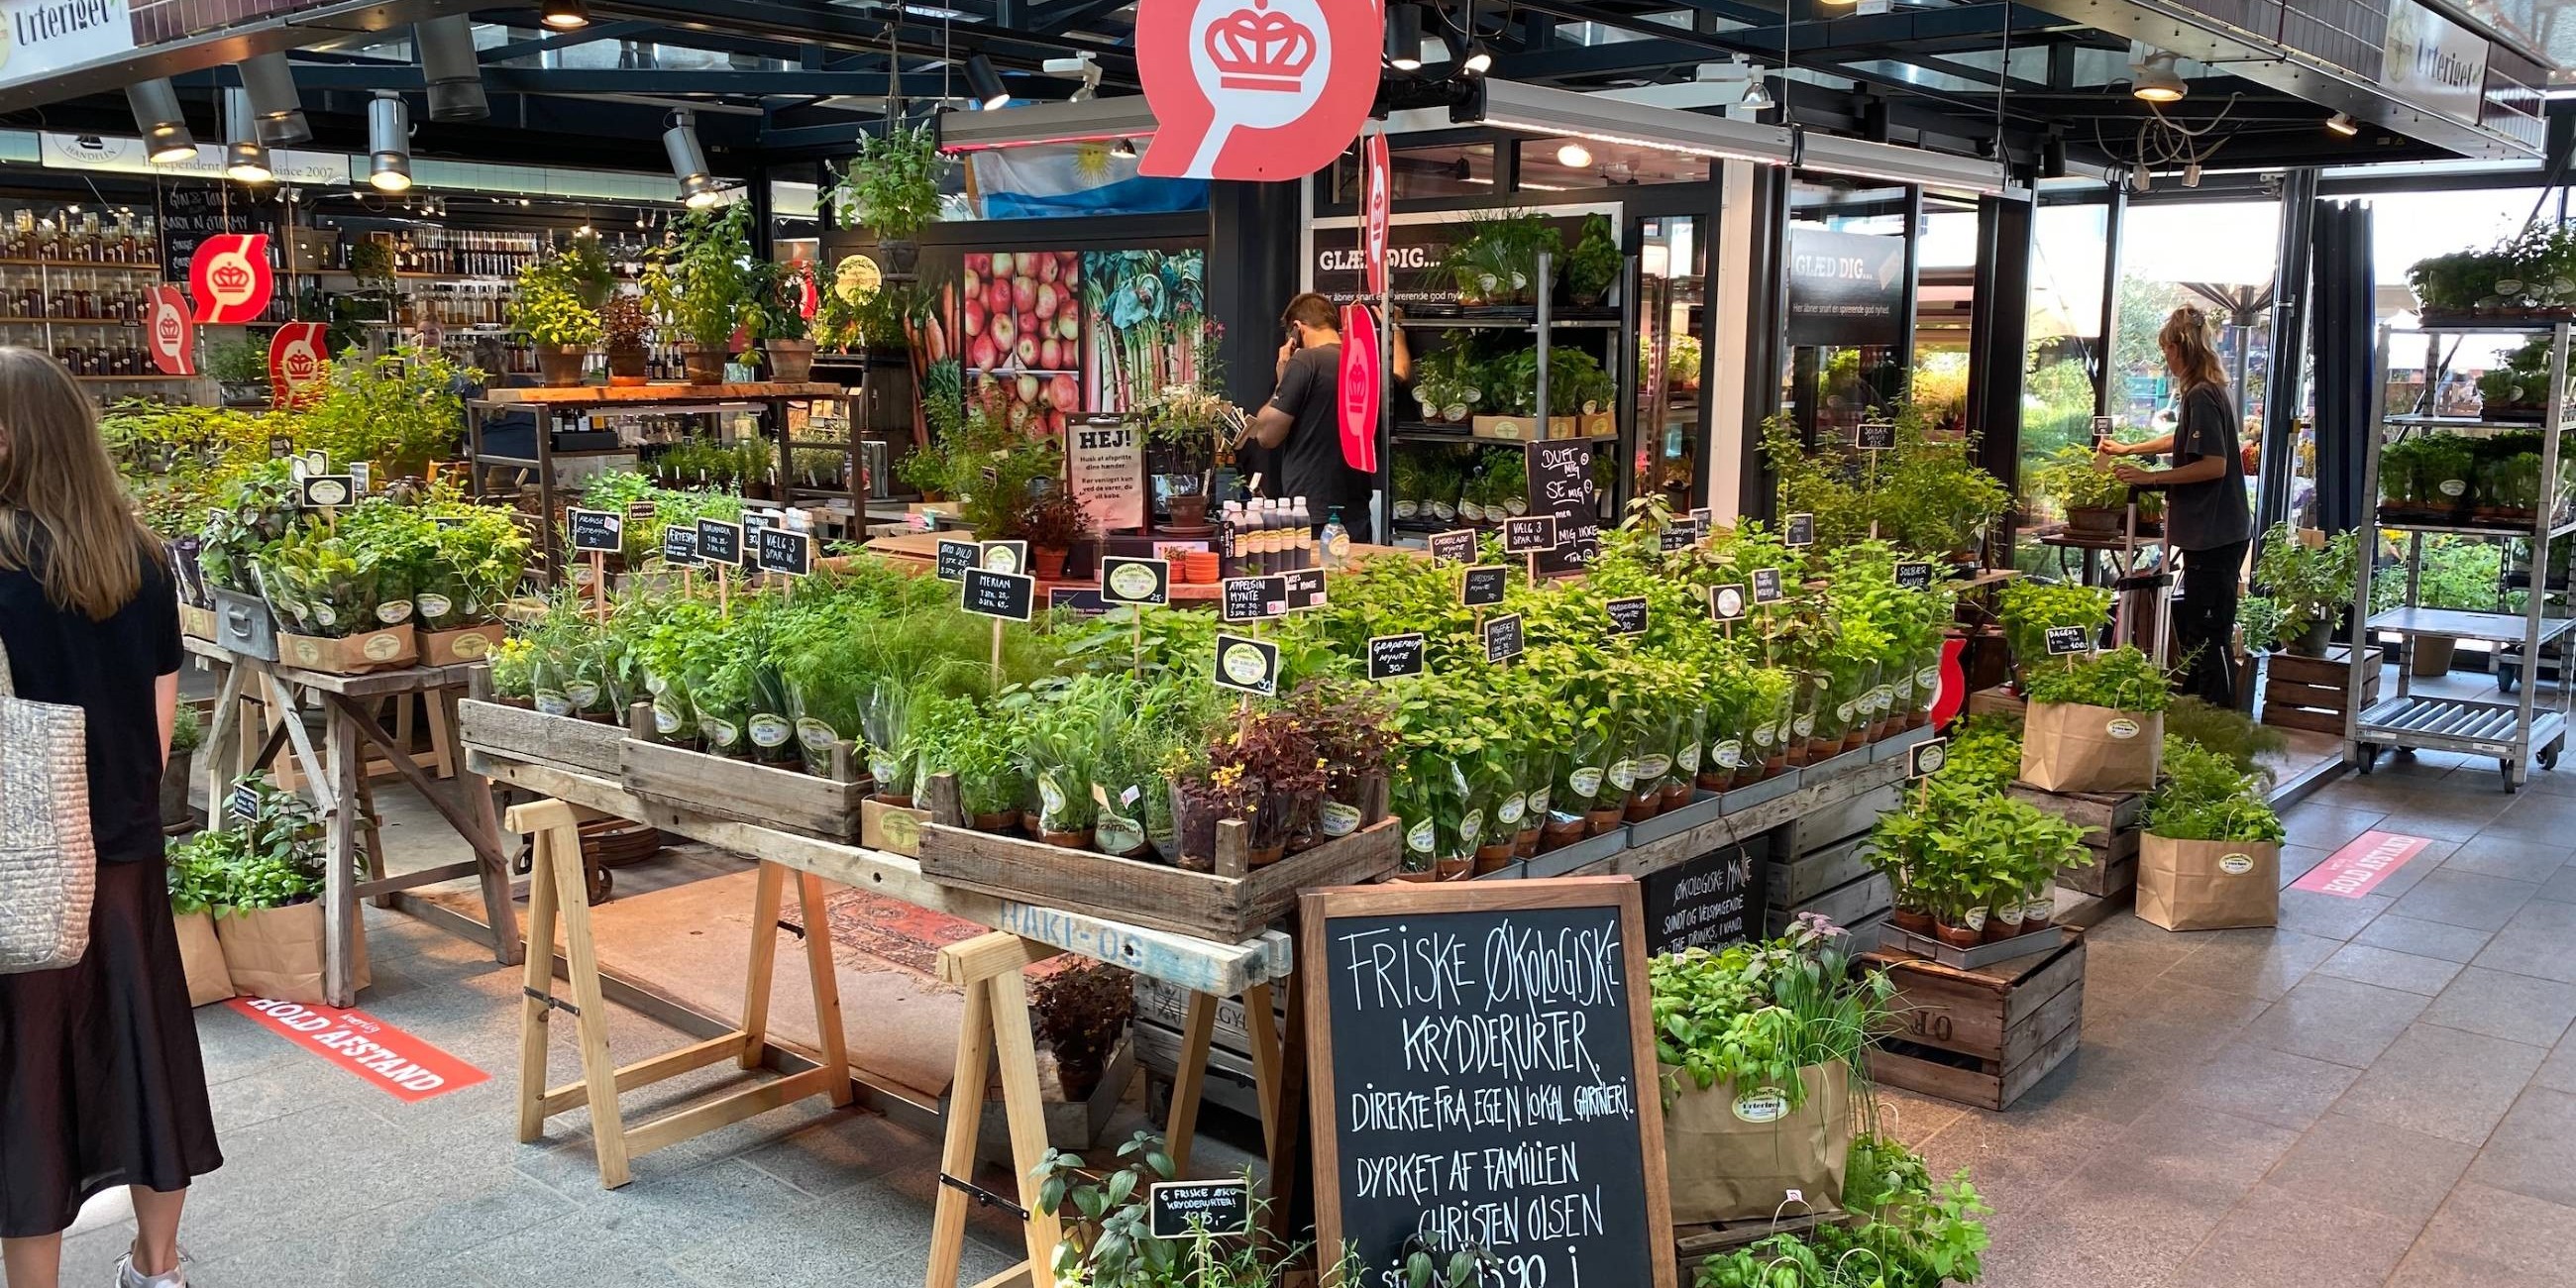 Nyt mikrogartneri: Gå på opdagelse blandt 80 økologiske krydderurter og mikrogrønt midt i København